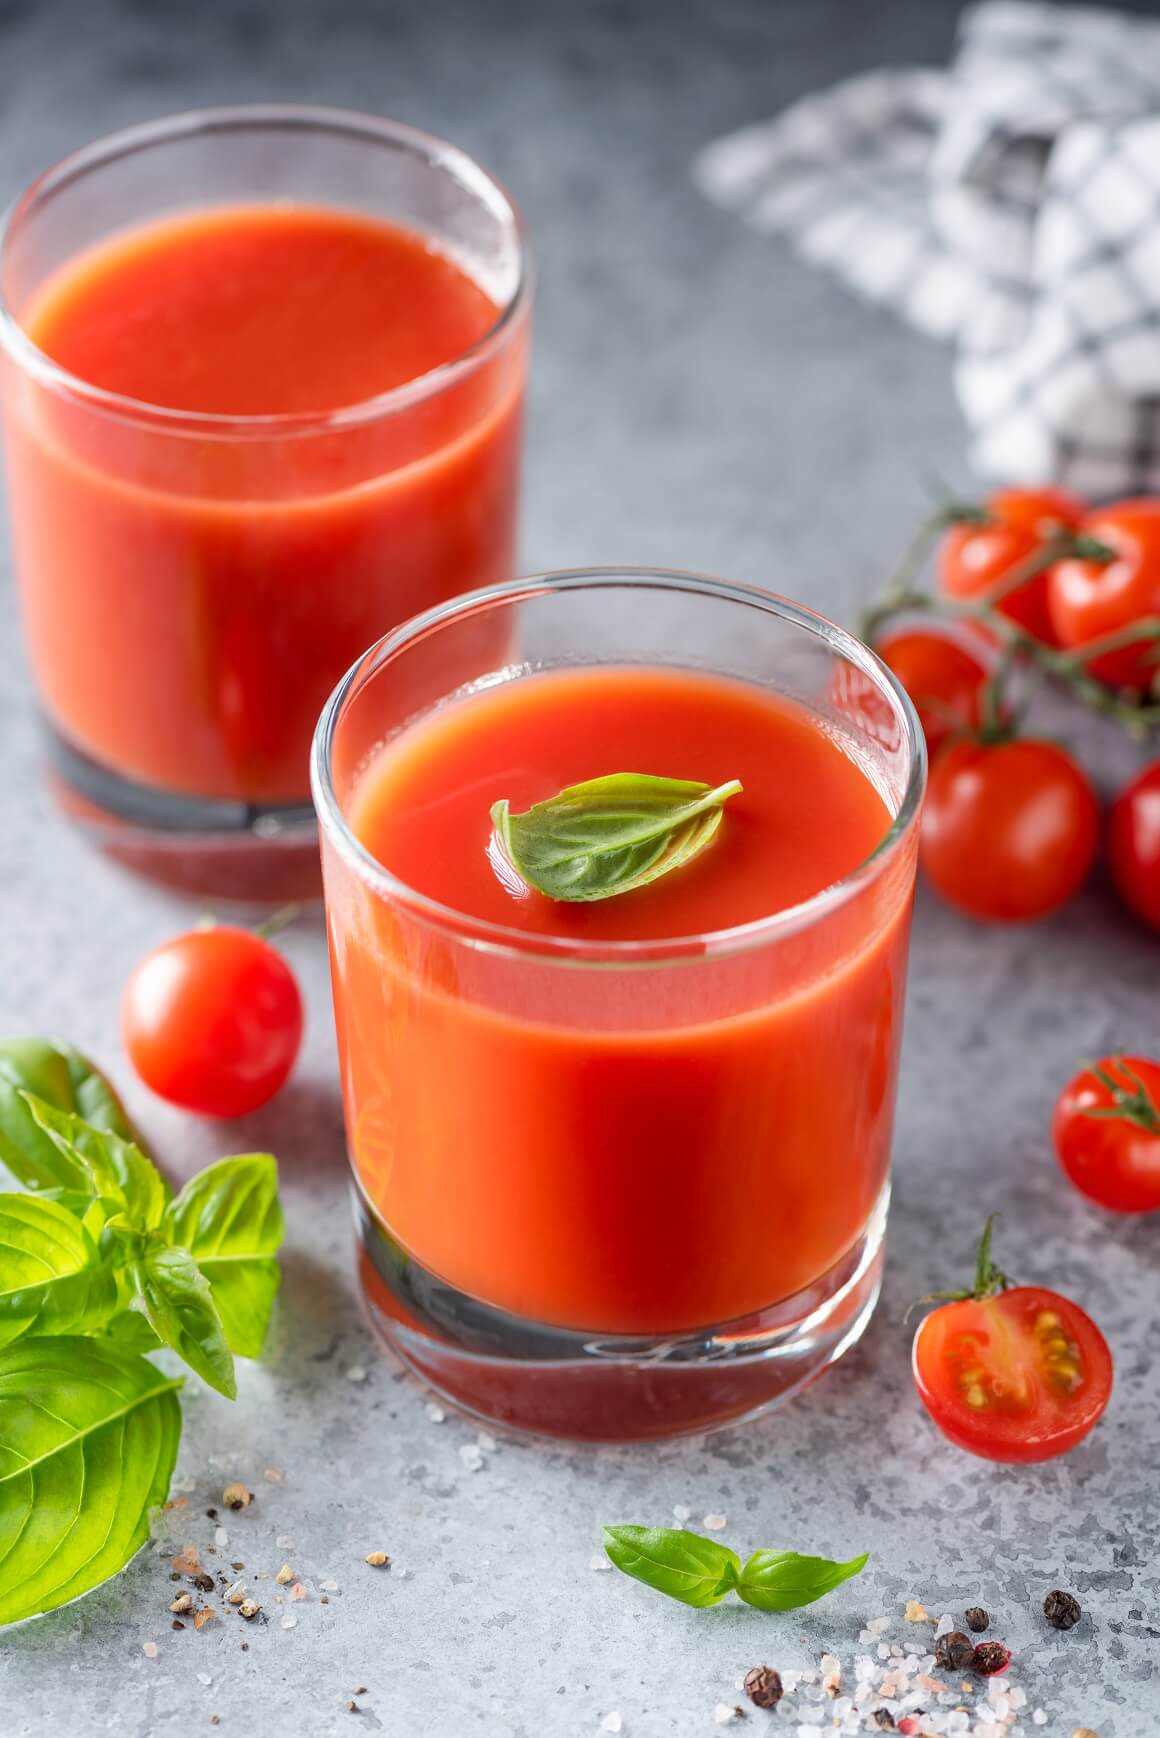 Izrada svježeg soka od rajčice kod kuće osigurava kvalitetu